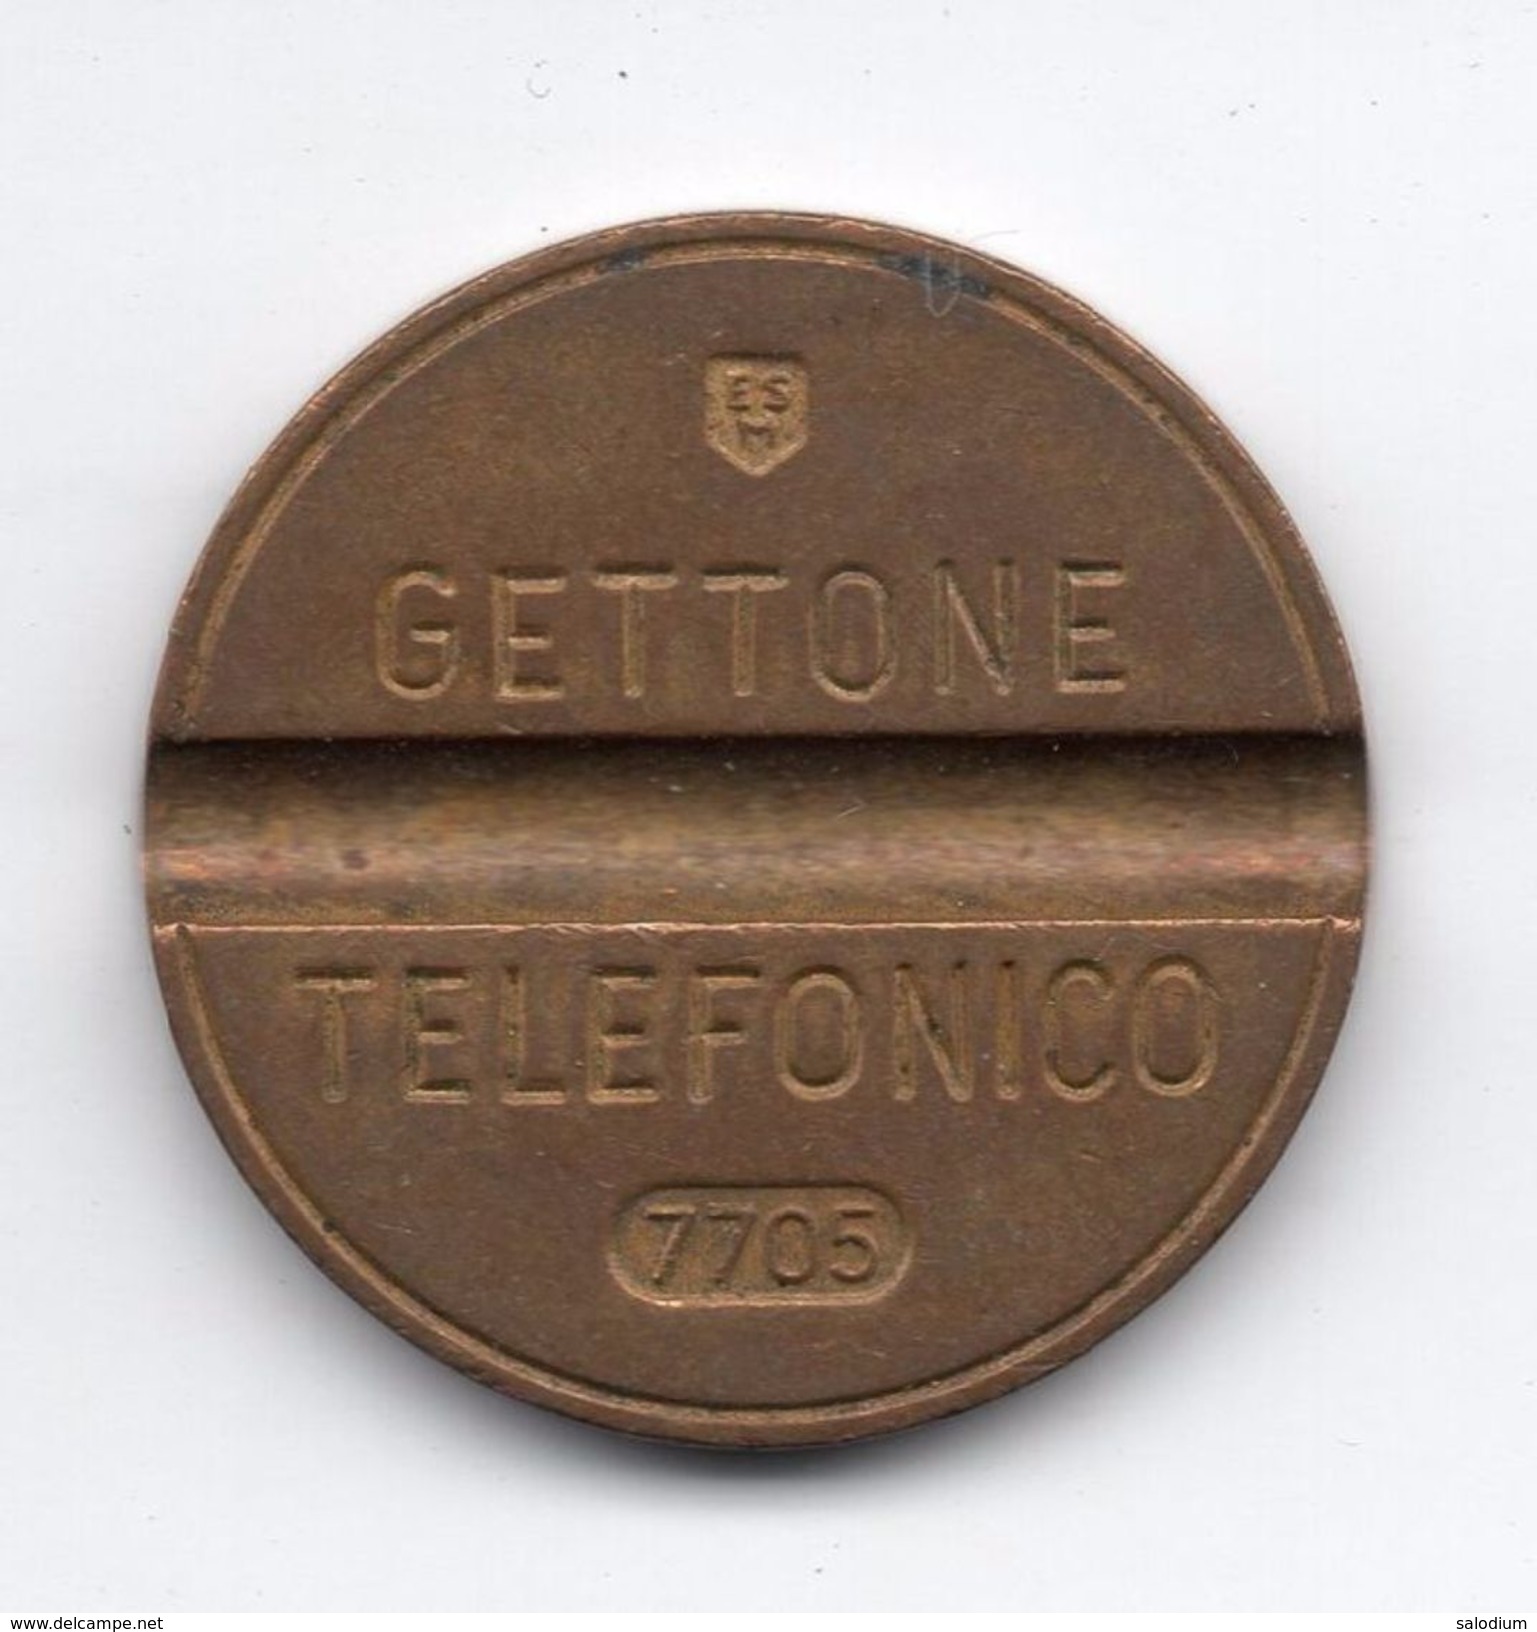 Gettone Telefonico 7705 Token Telephone - (Id-620) - Professionnels/De Société